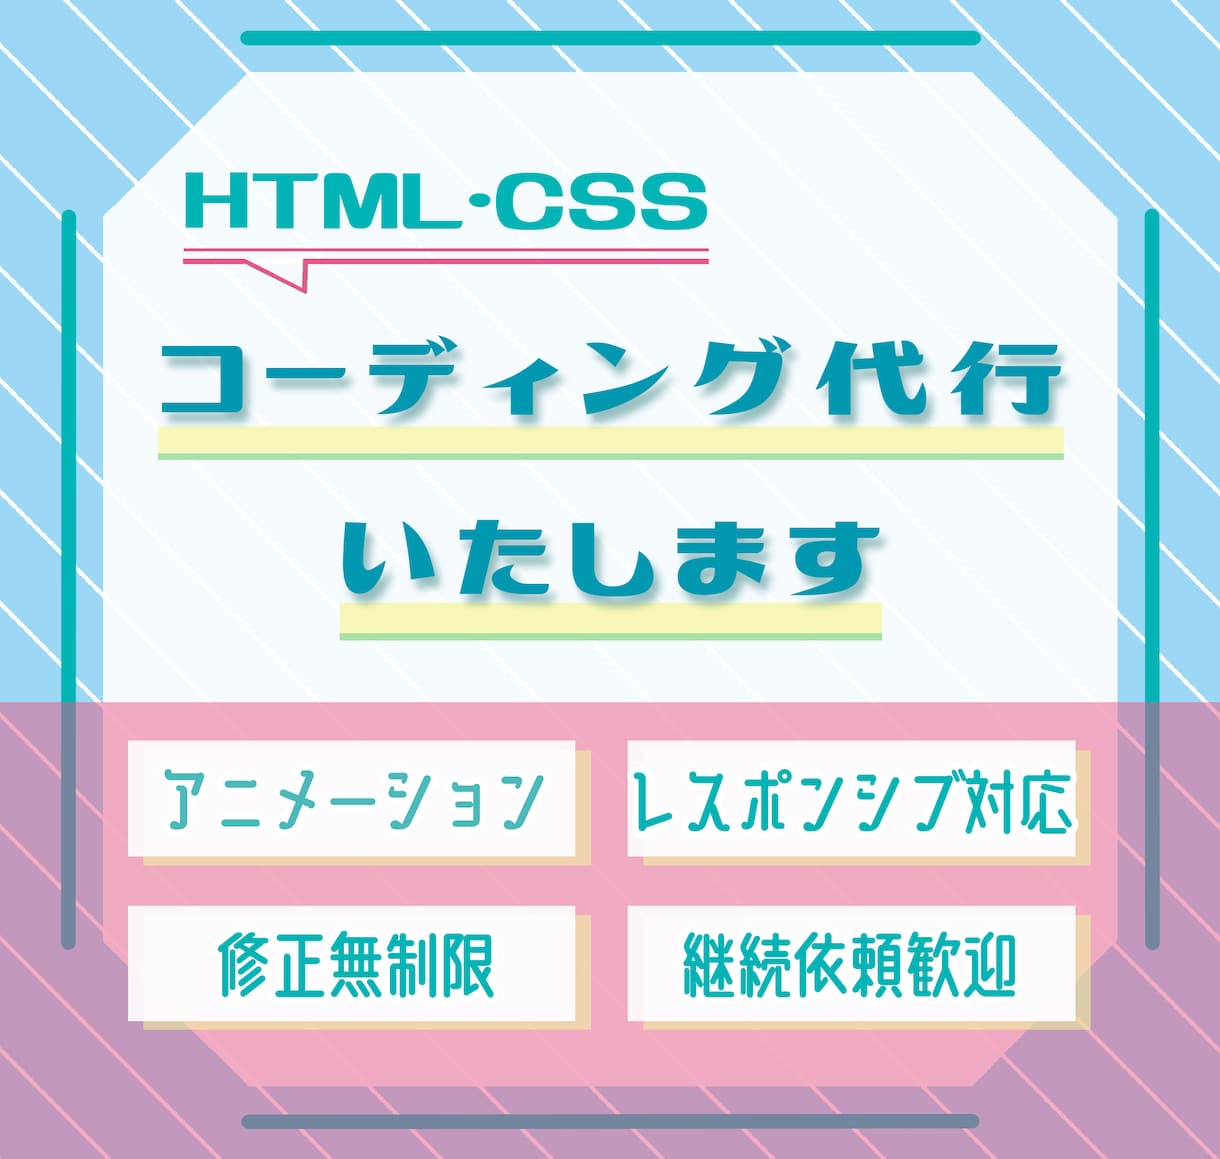 レスポンシブ対応HP/LPコーディング承ります アニメーション可。HTML/CSSコーディング代行いたします イメージ1